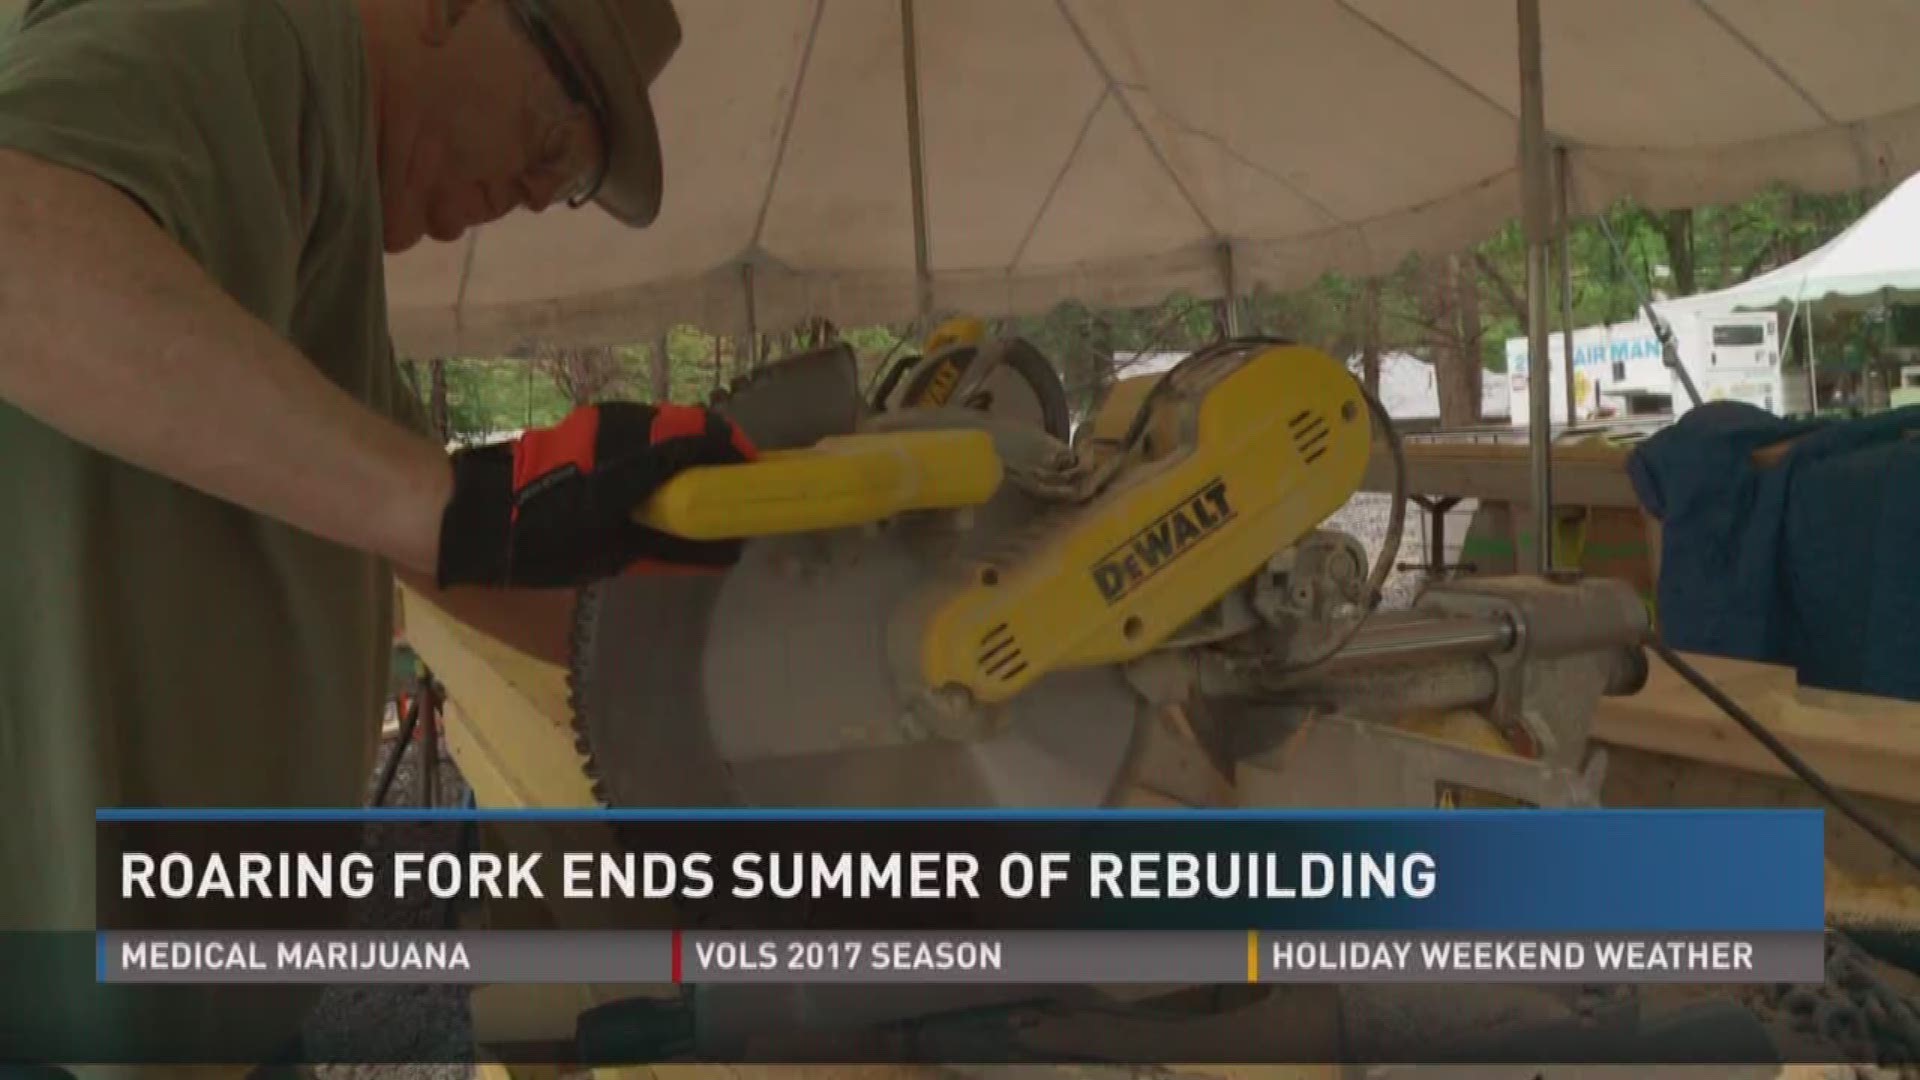 Roaring Fork ends summer of rebuilding